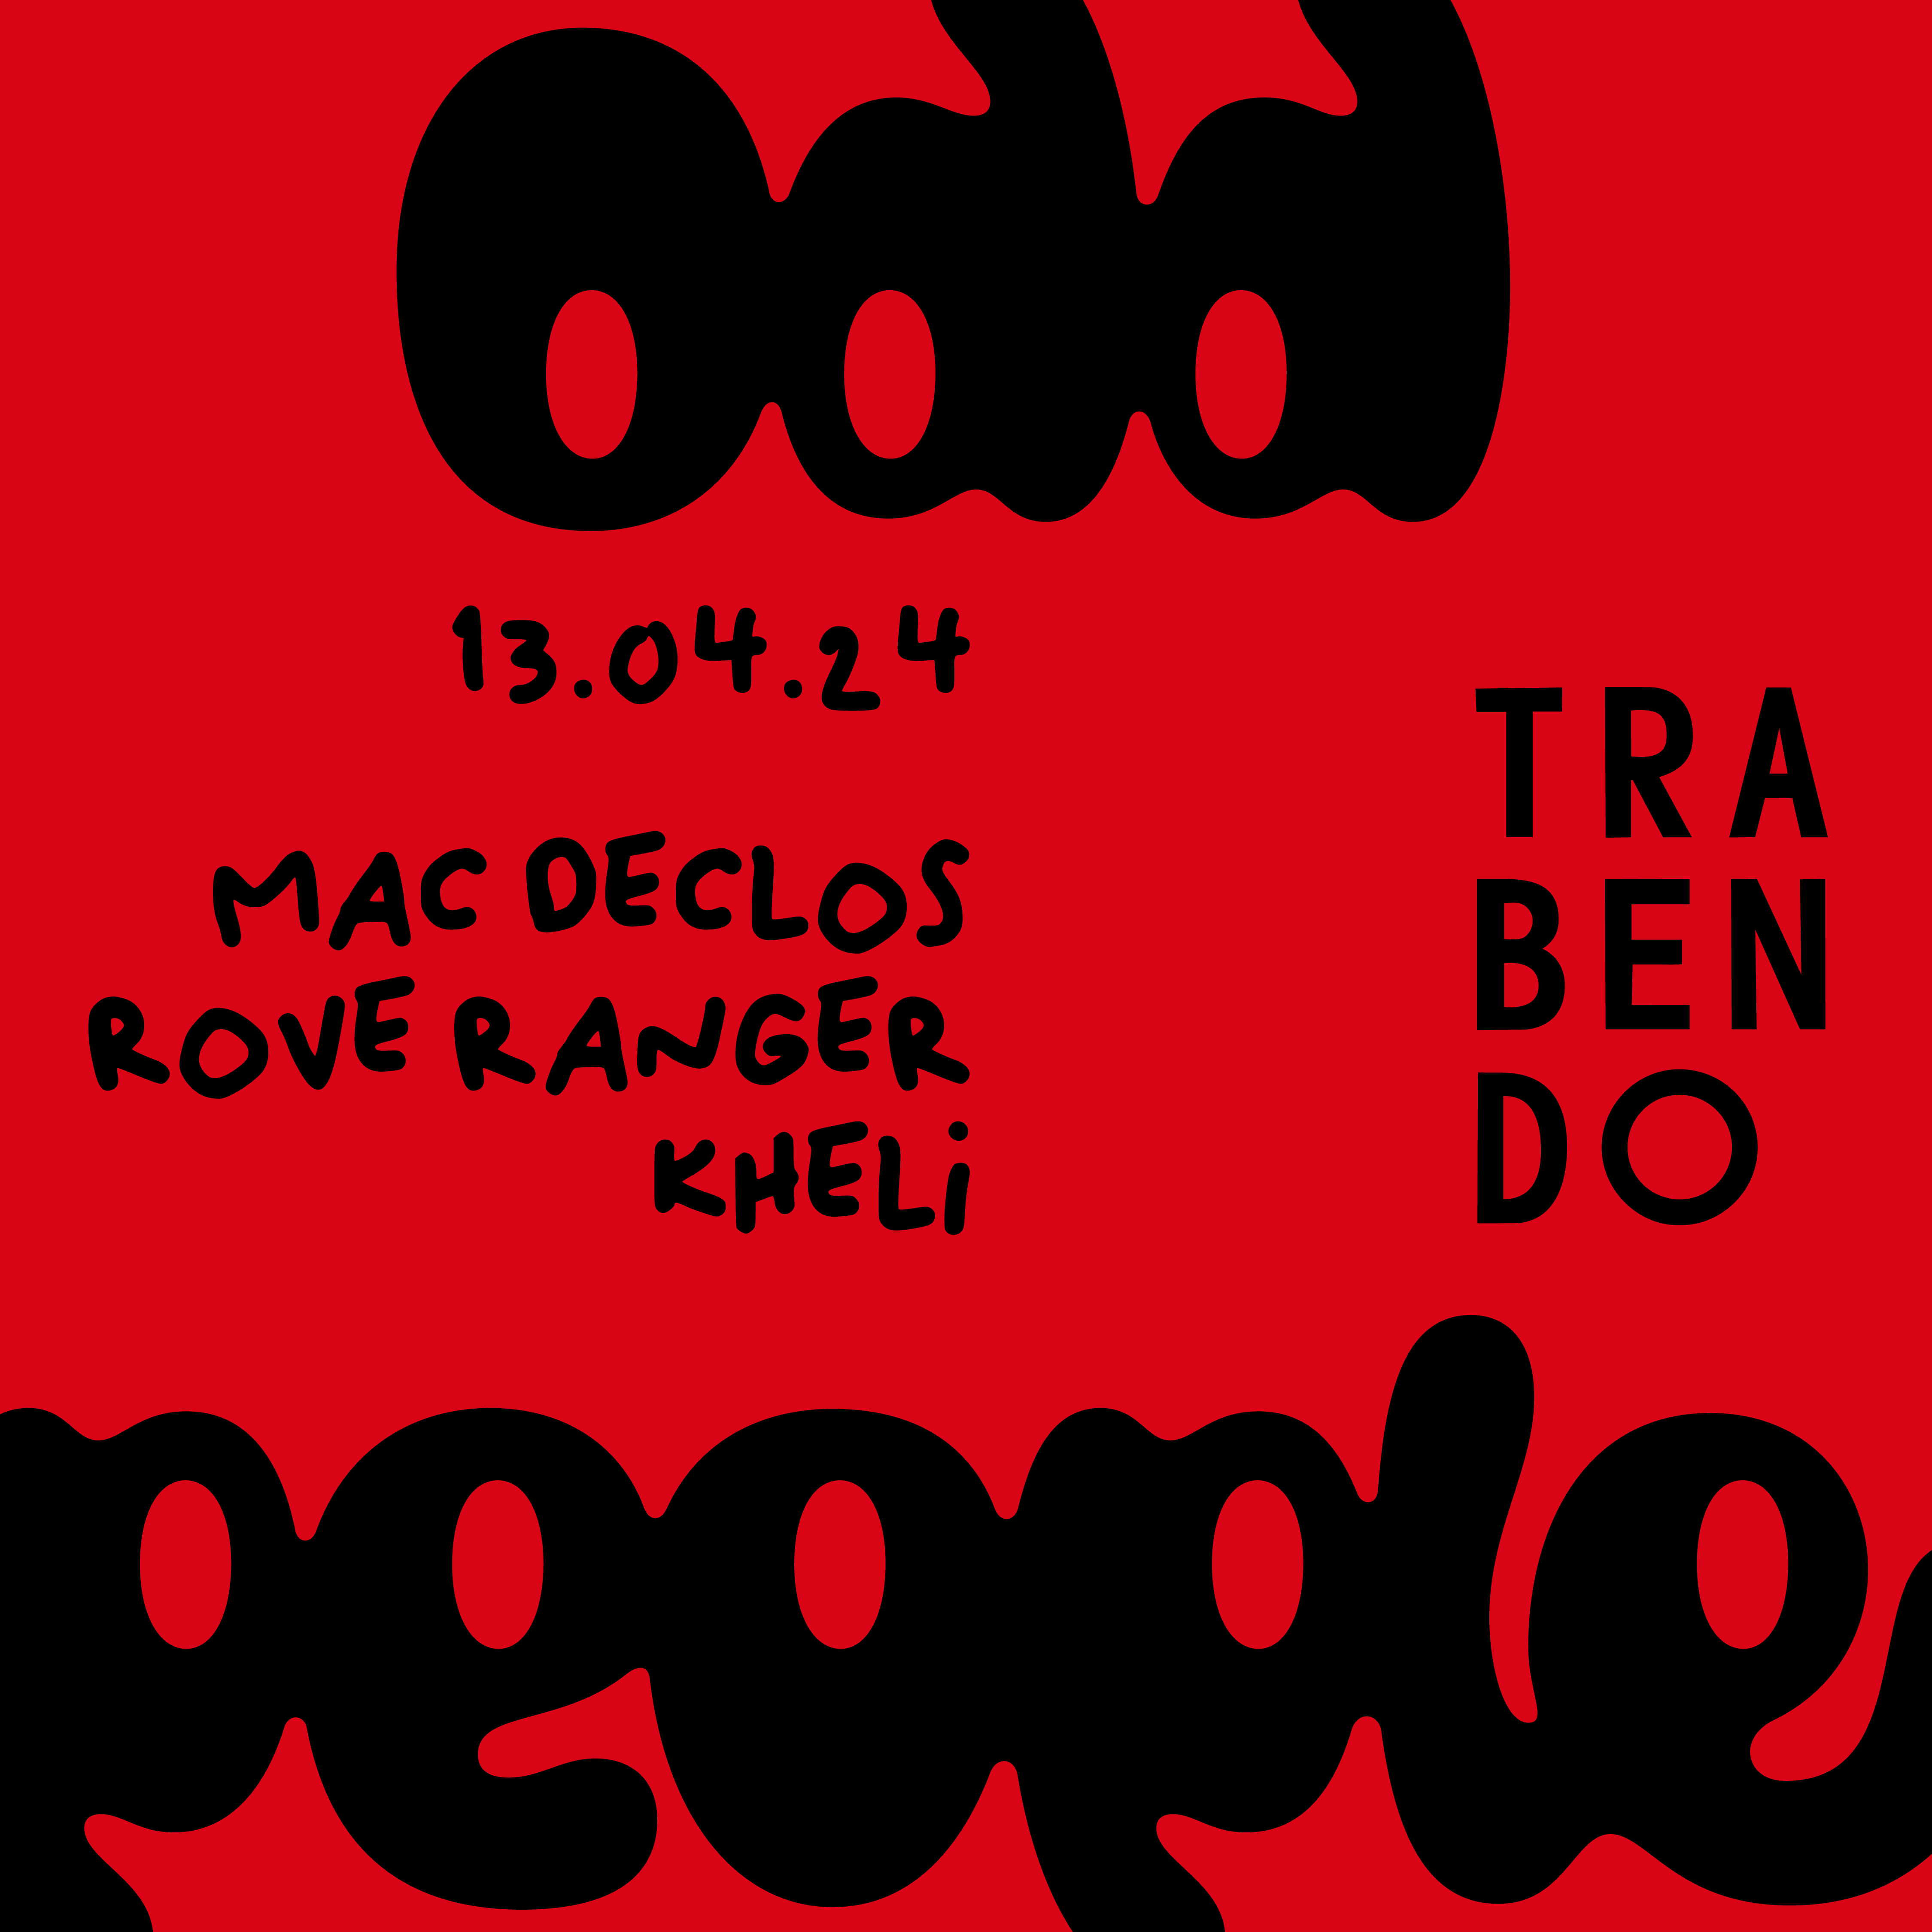 ODD PEOPLE: Mac Declos + Rove Ranger + Kheli - Página frontal